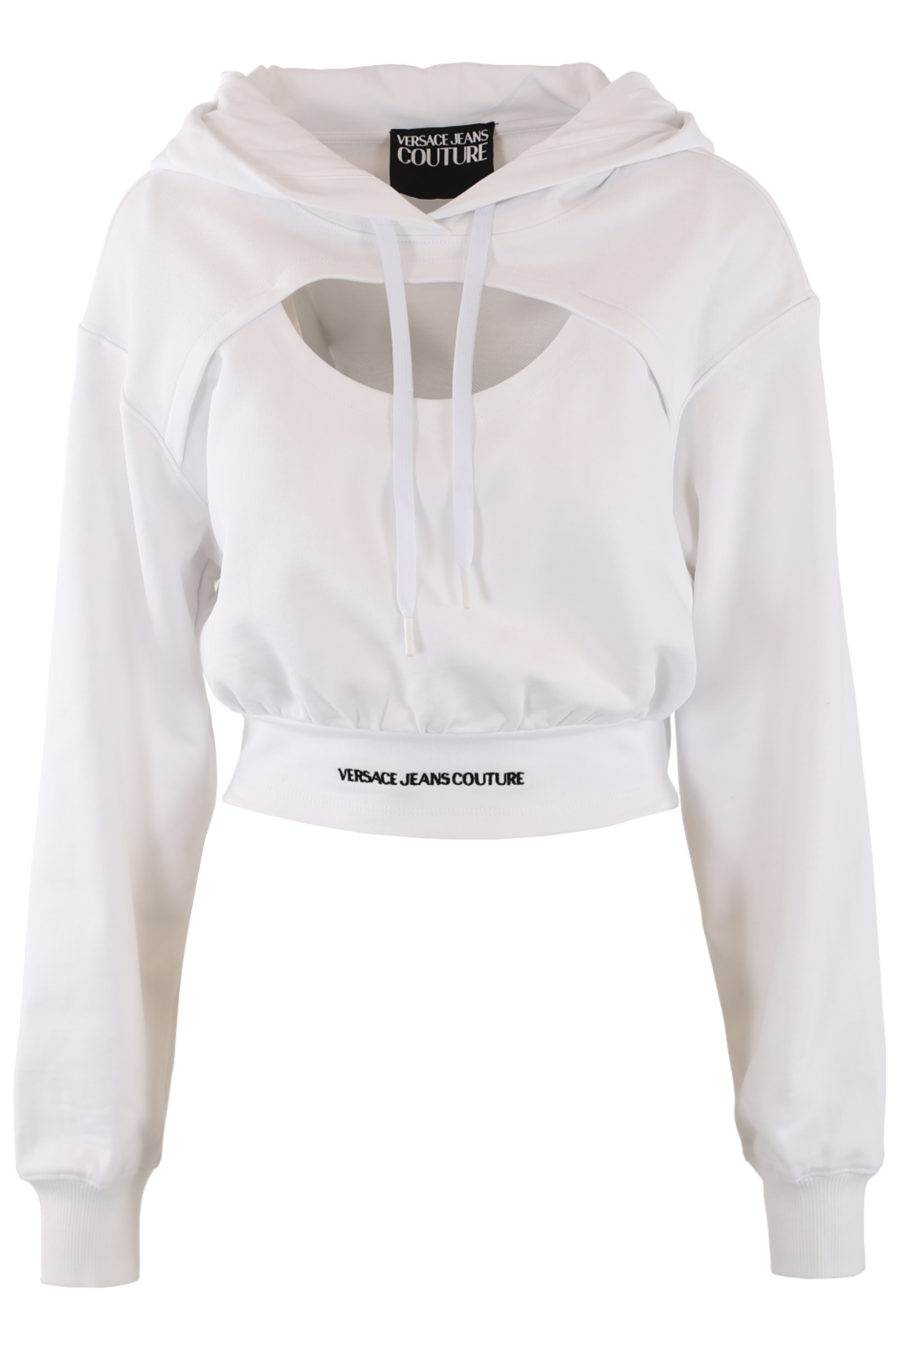 Sudadera blanca con capucha y logo blanco - IMG 0424